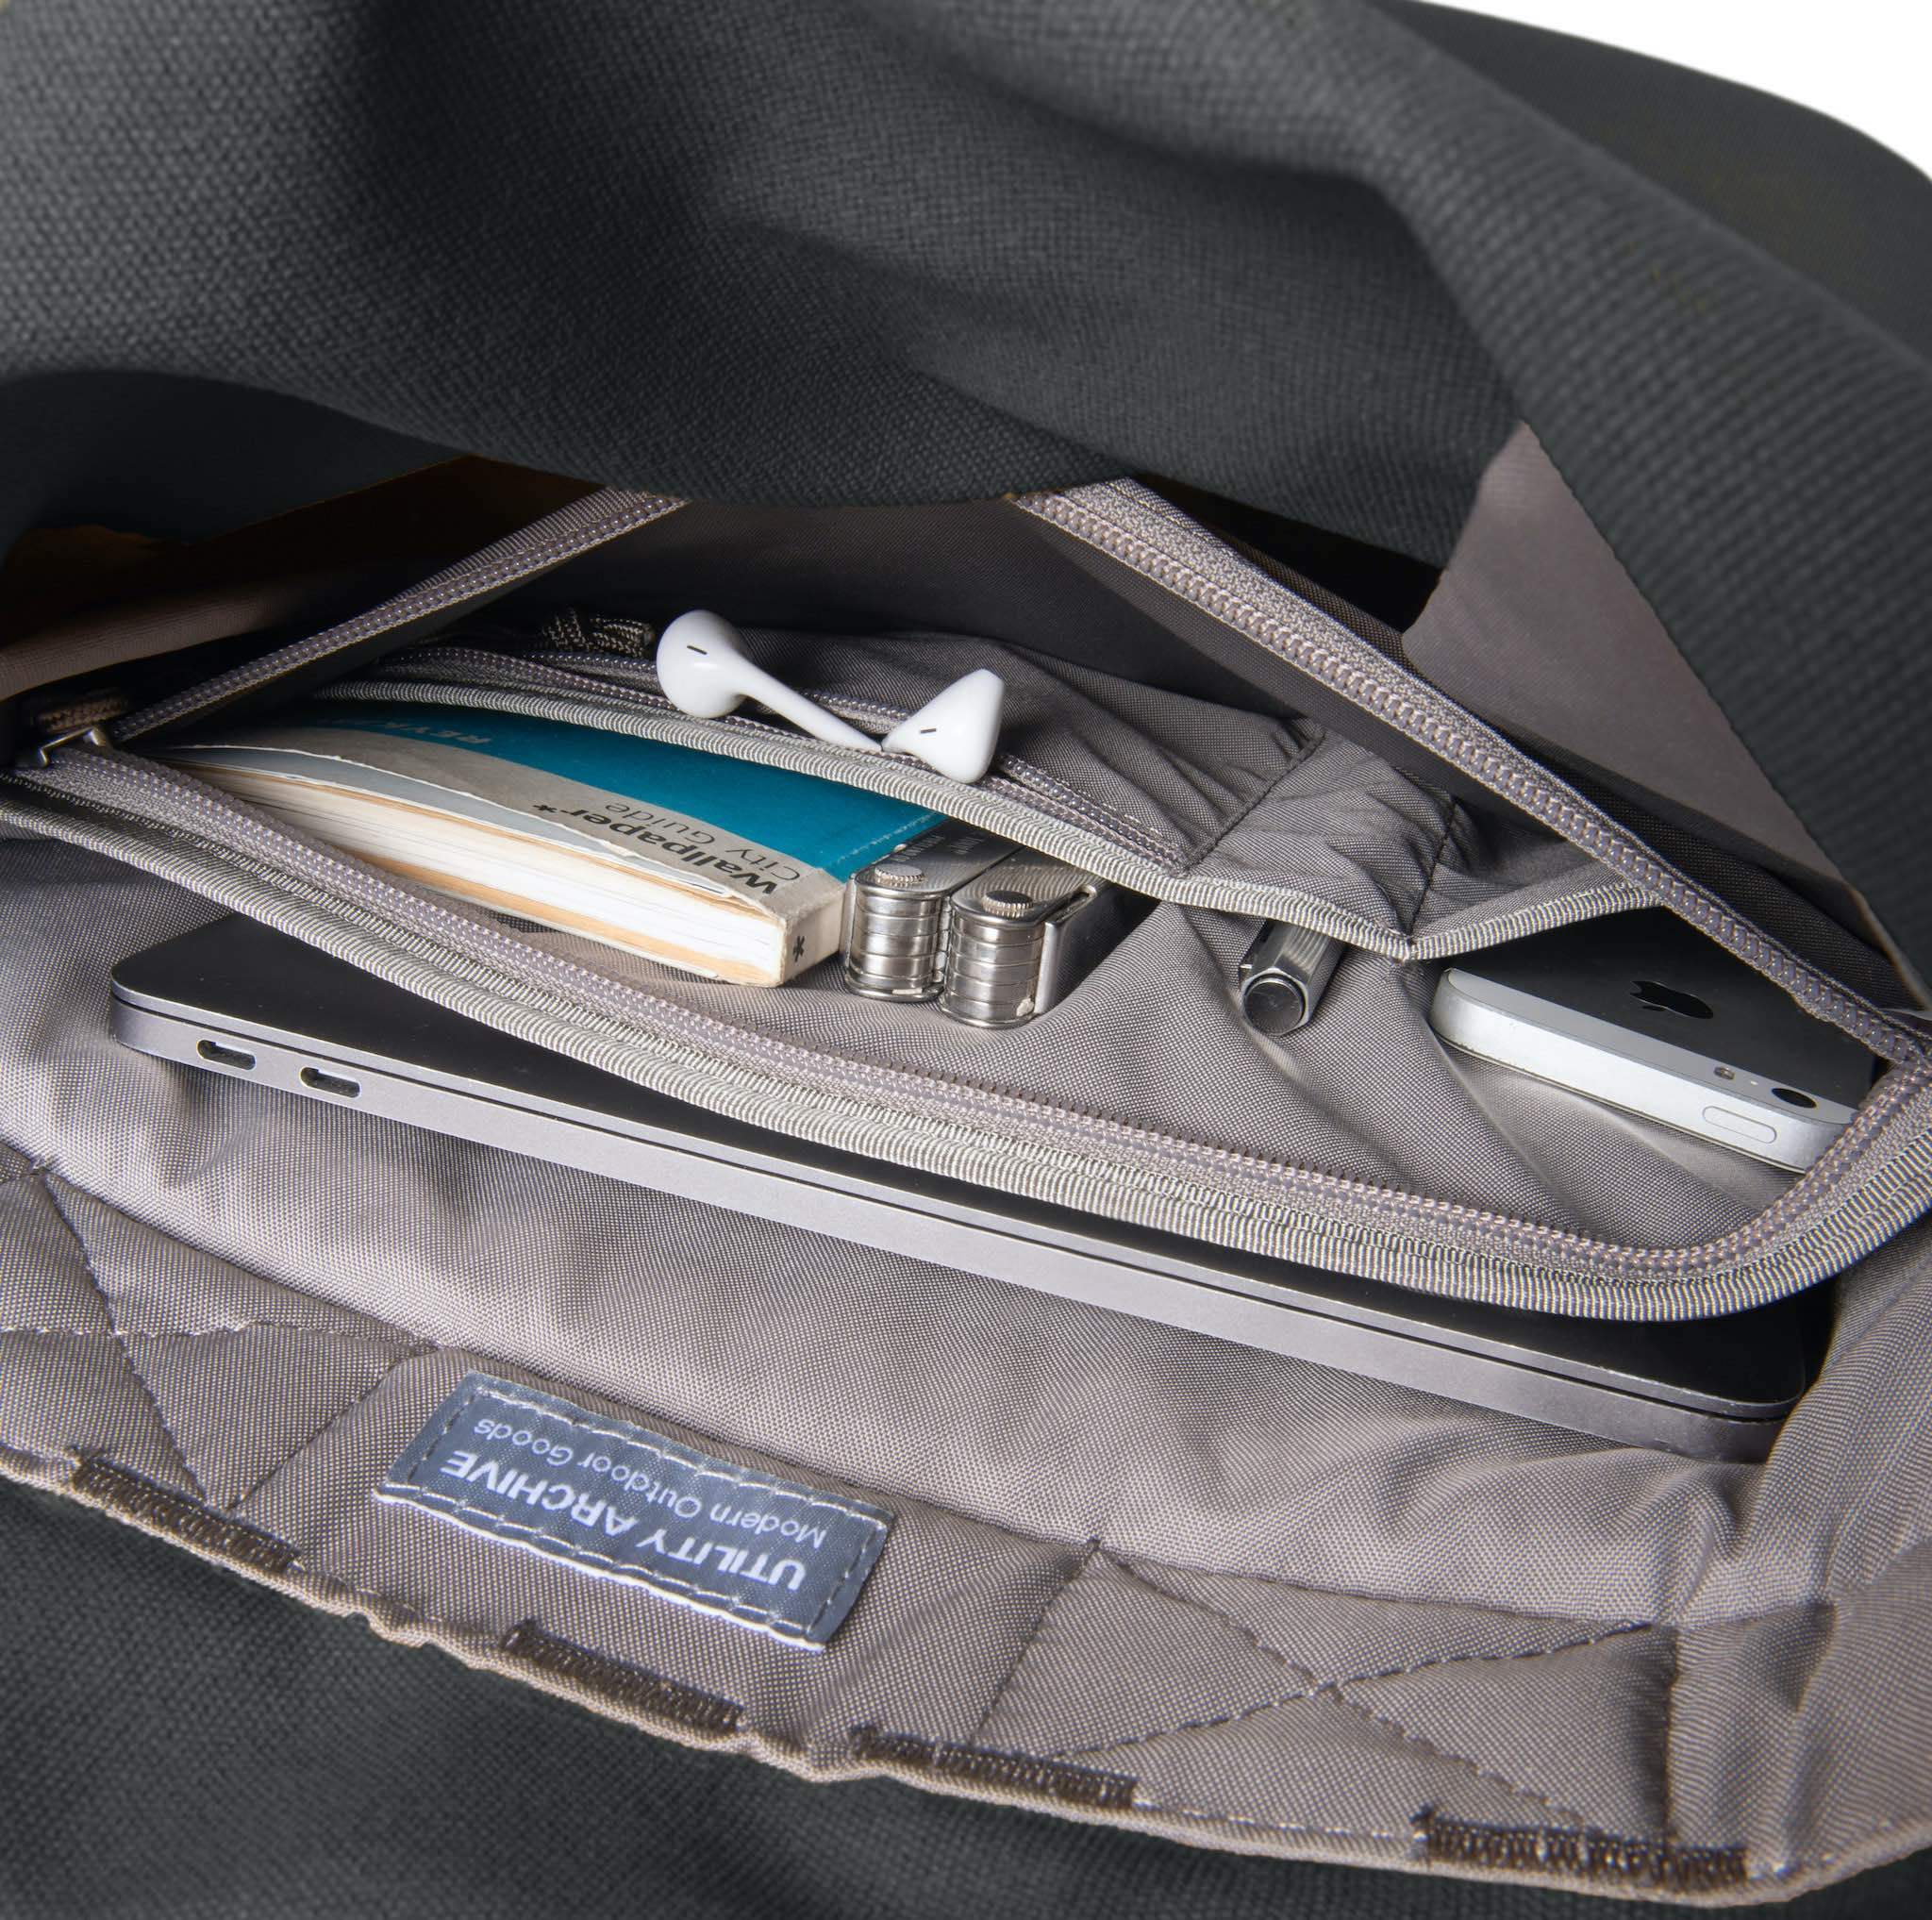 Grey backpack organiser pocket with guidebook and earphones.